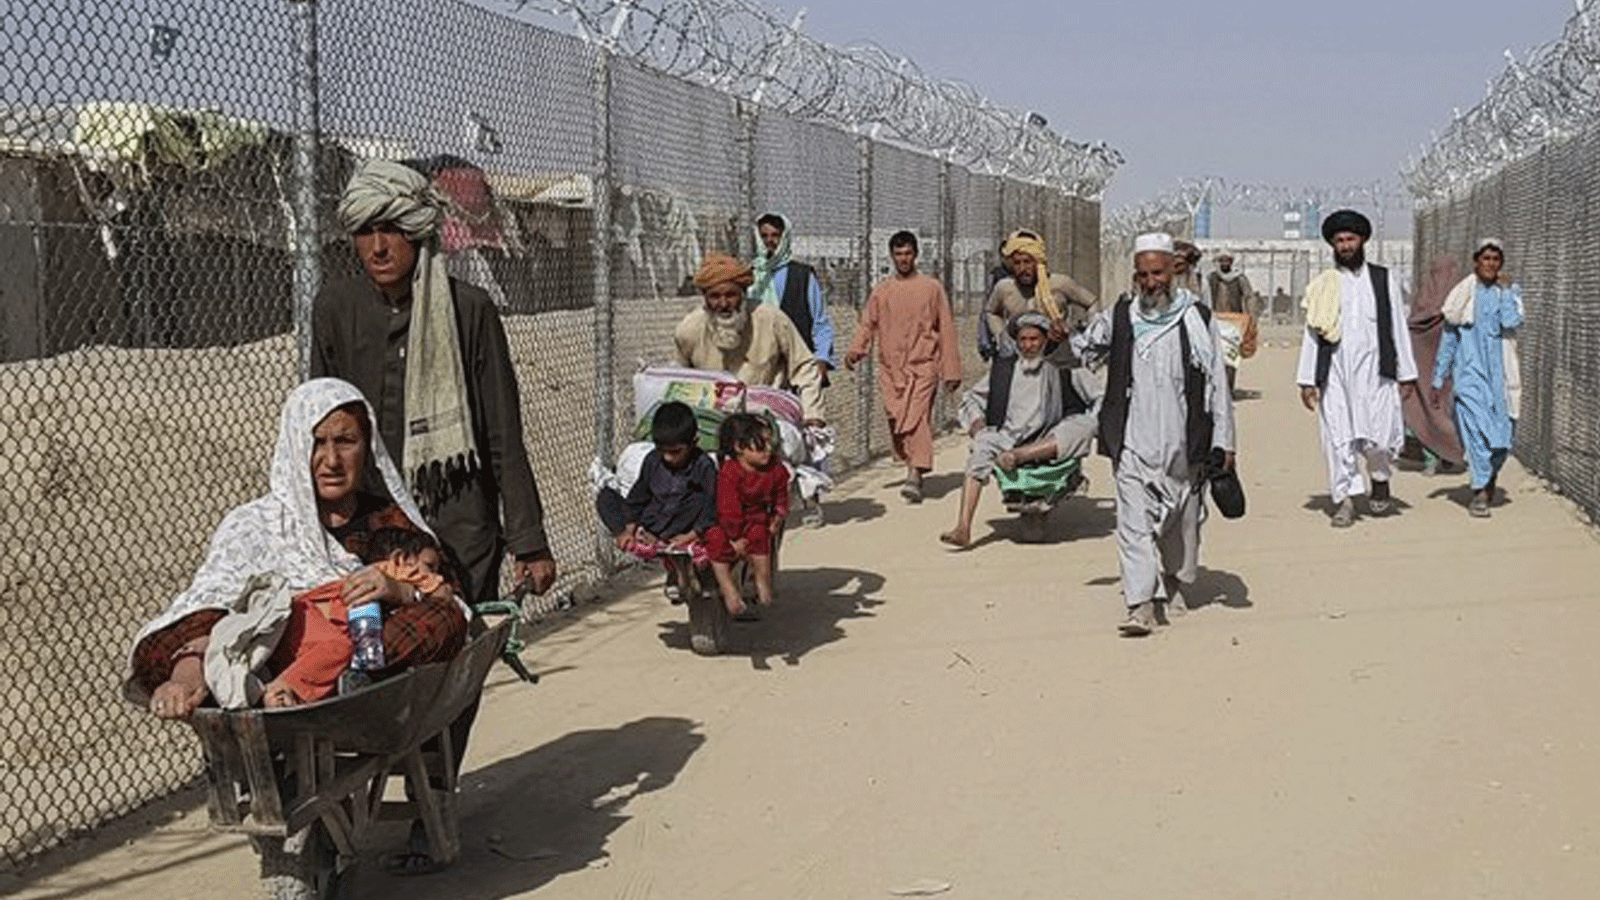 مواطنون أفغان يصلون إلى باكستان بعد عبورهم نقطة الحدود الباكستانية الأفغانية في شامان في 21 آب/ أغسطس 2021.